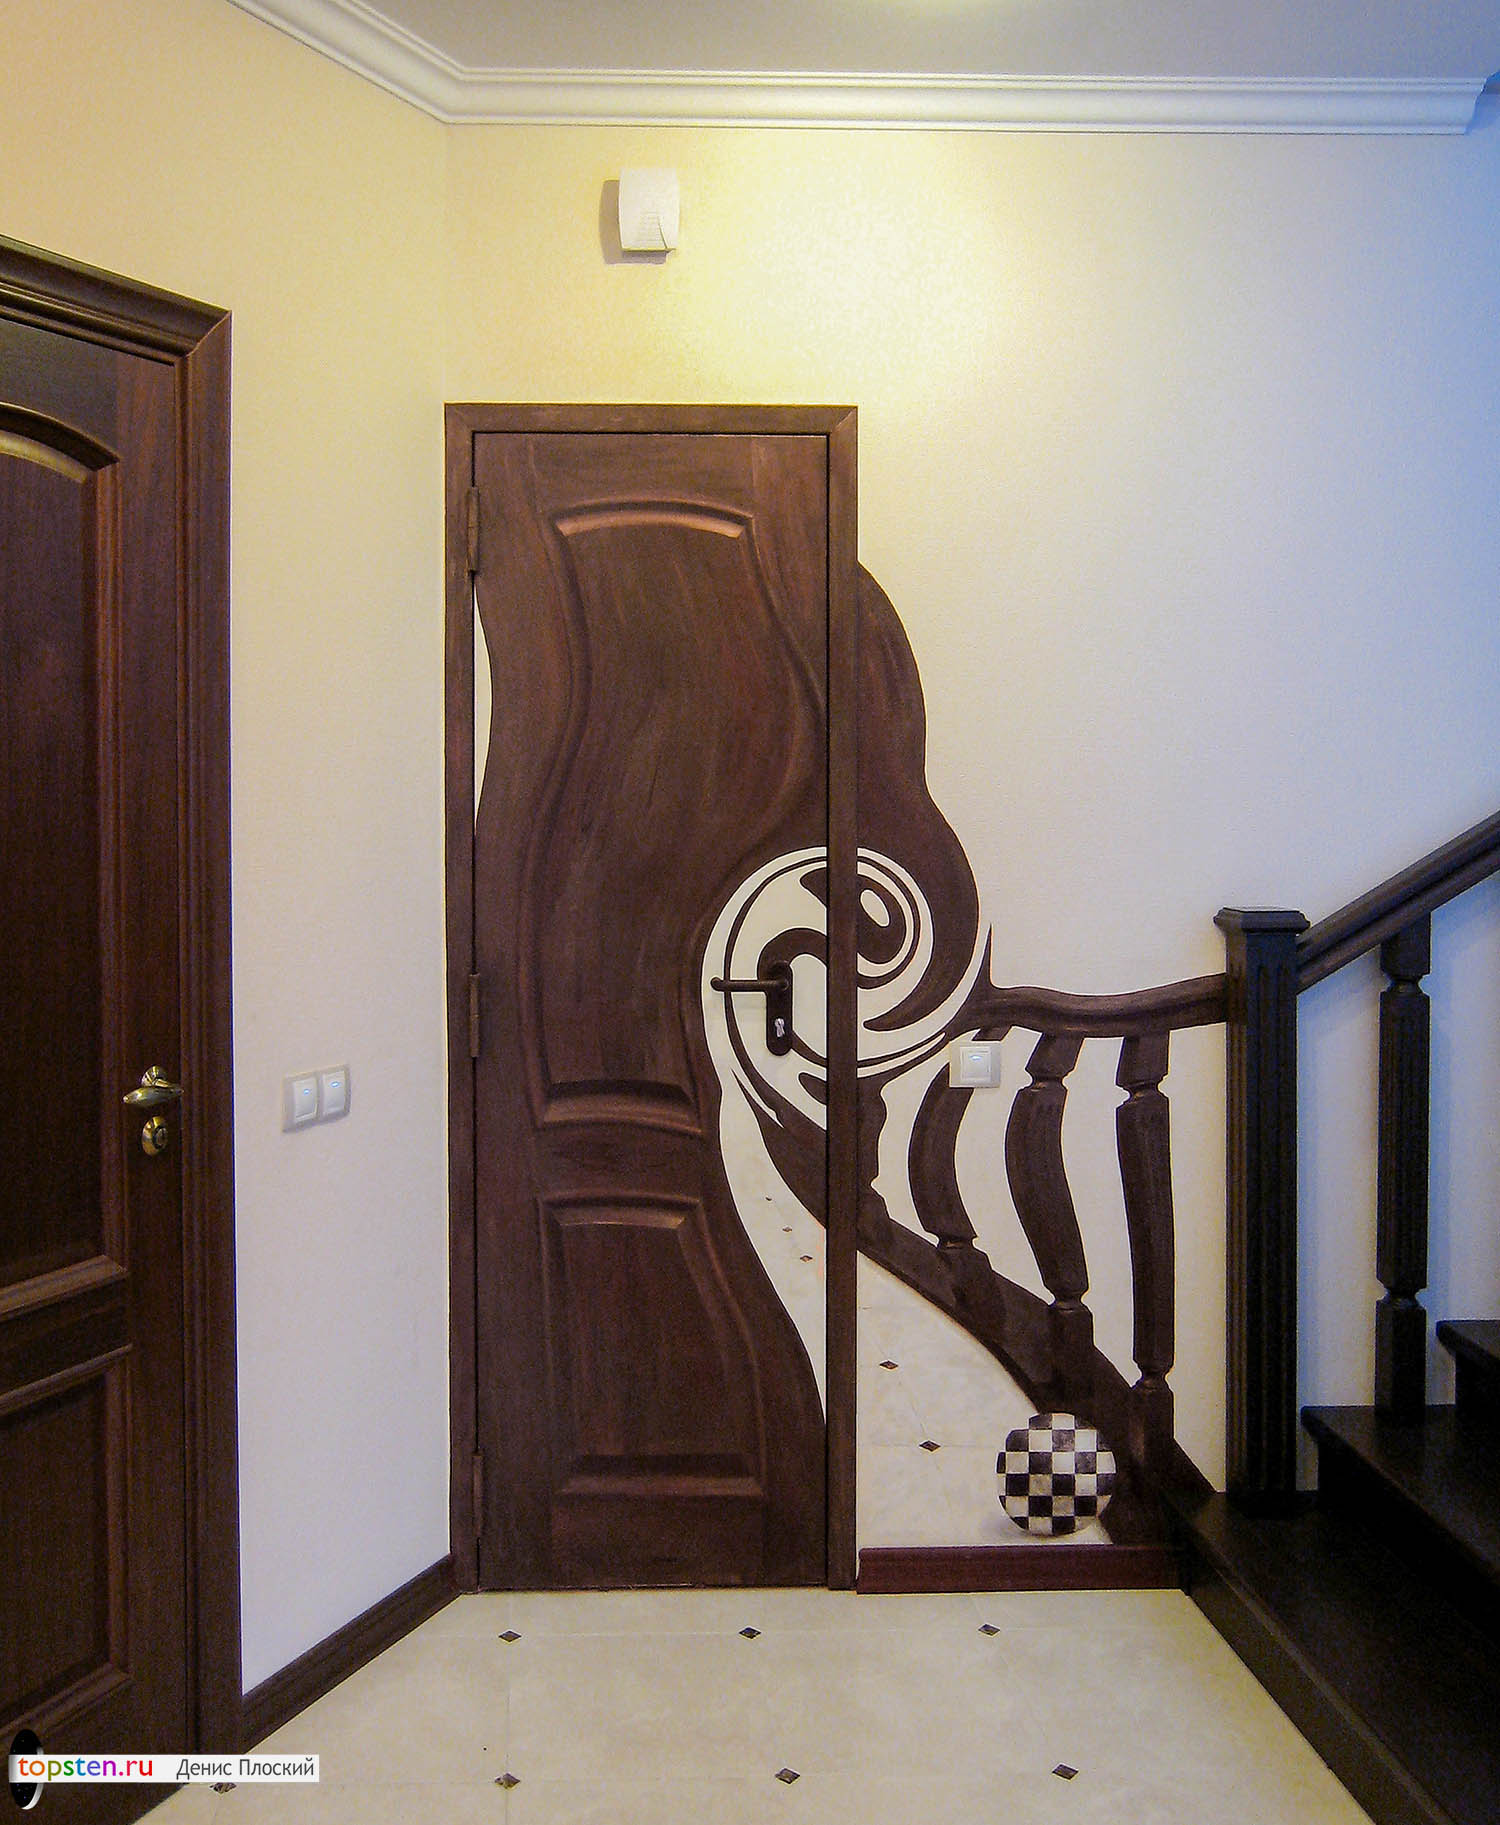 Нарисованная дверь